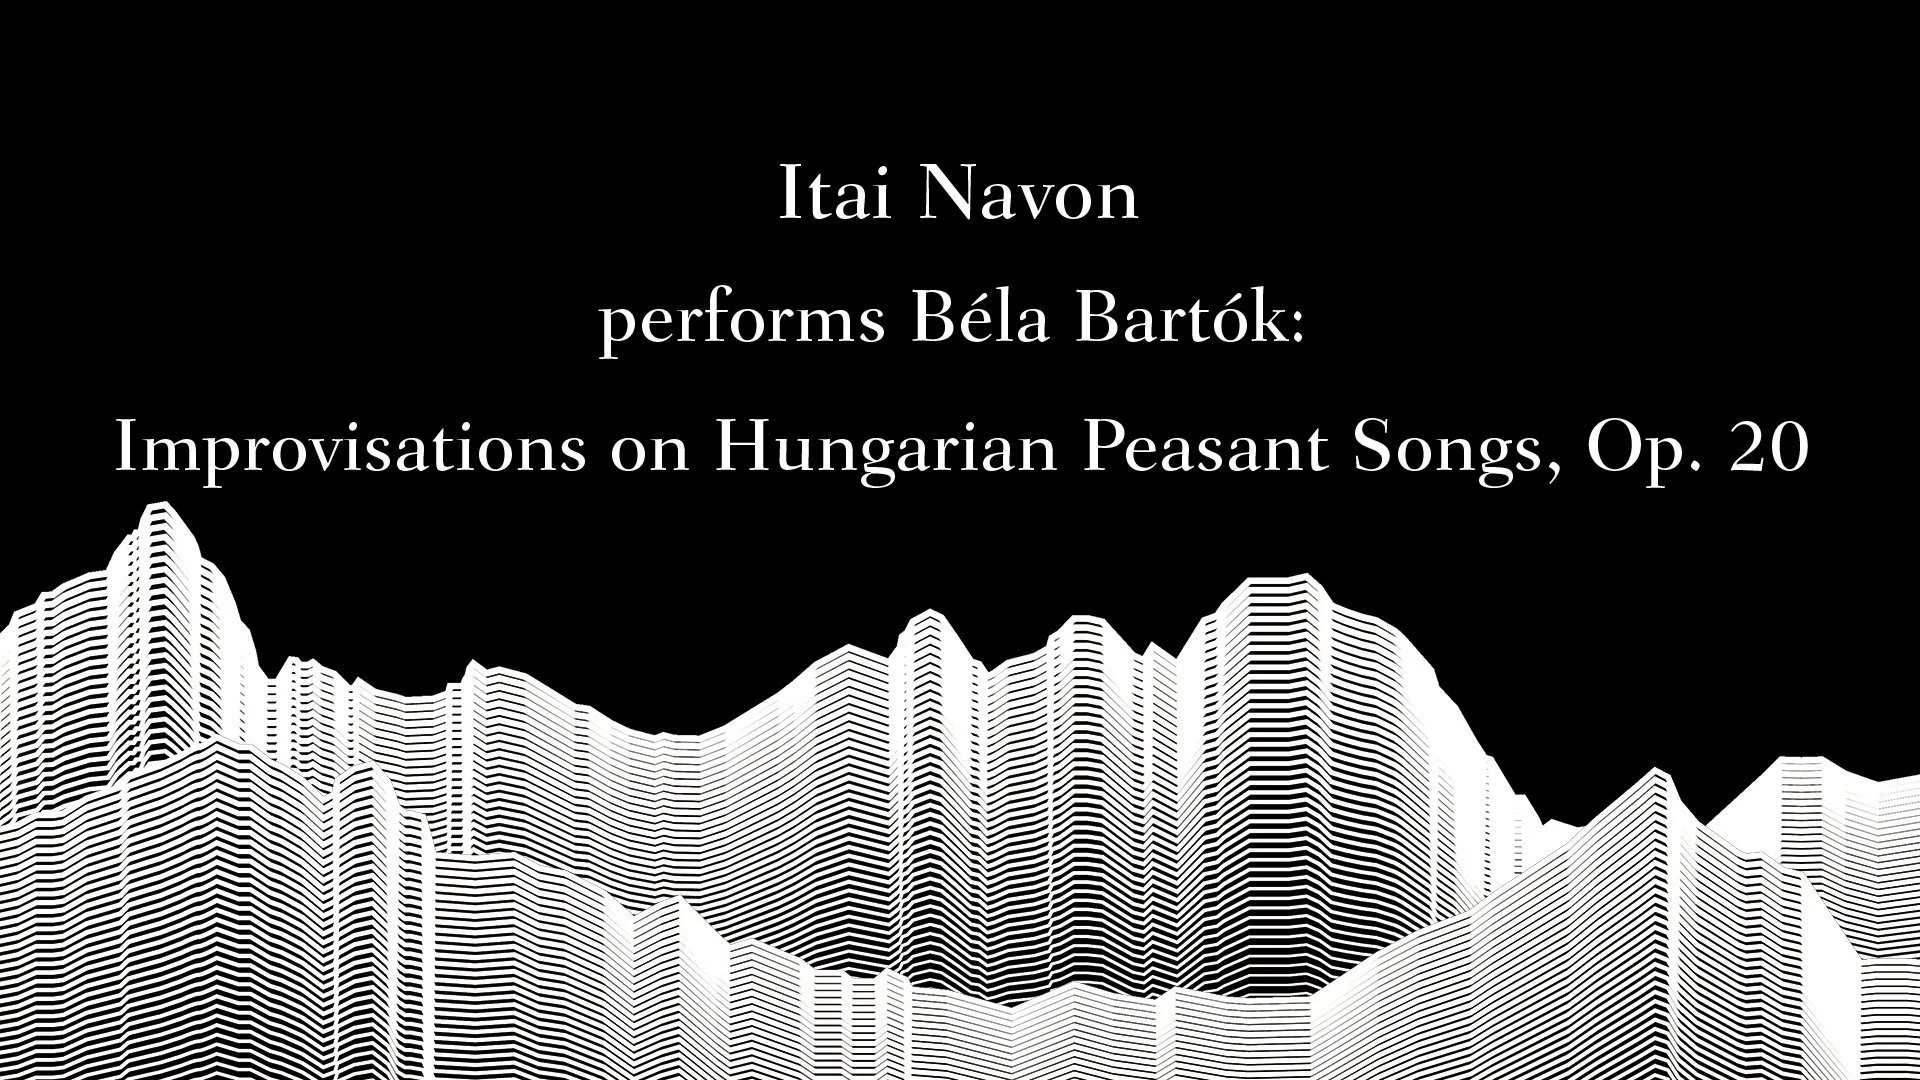 Masterclass with Sir András Schiff – Itai Navon performs Bartók